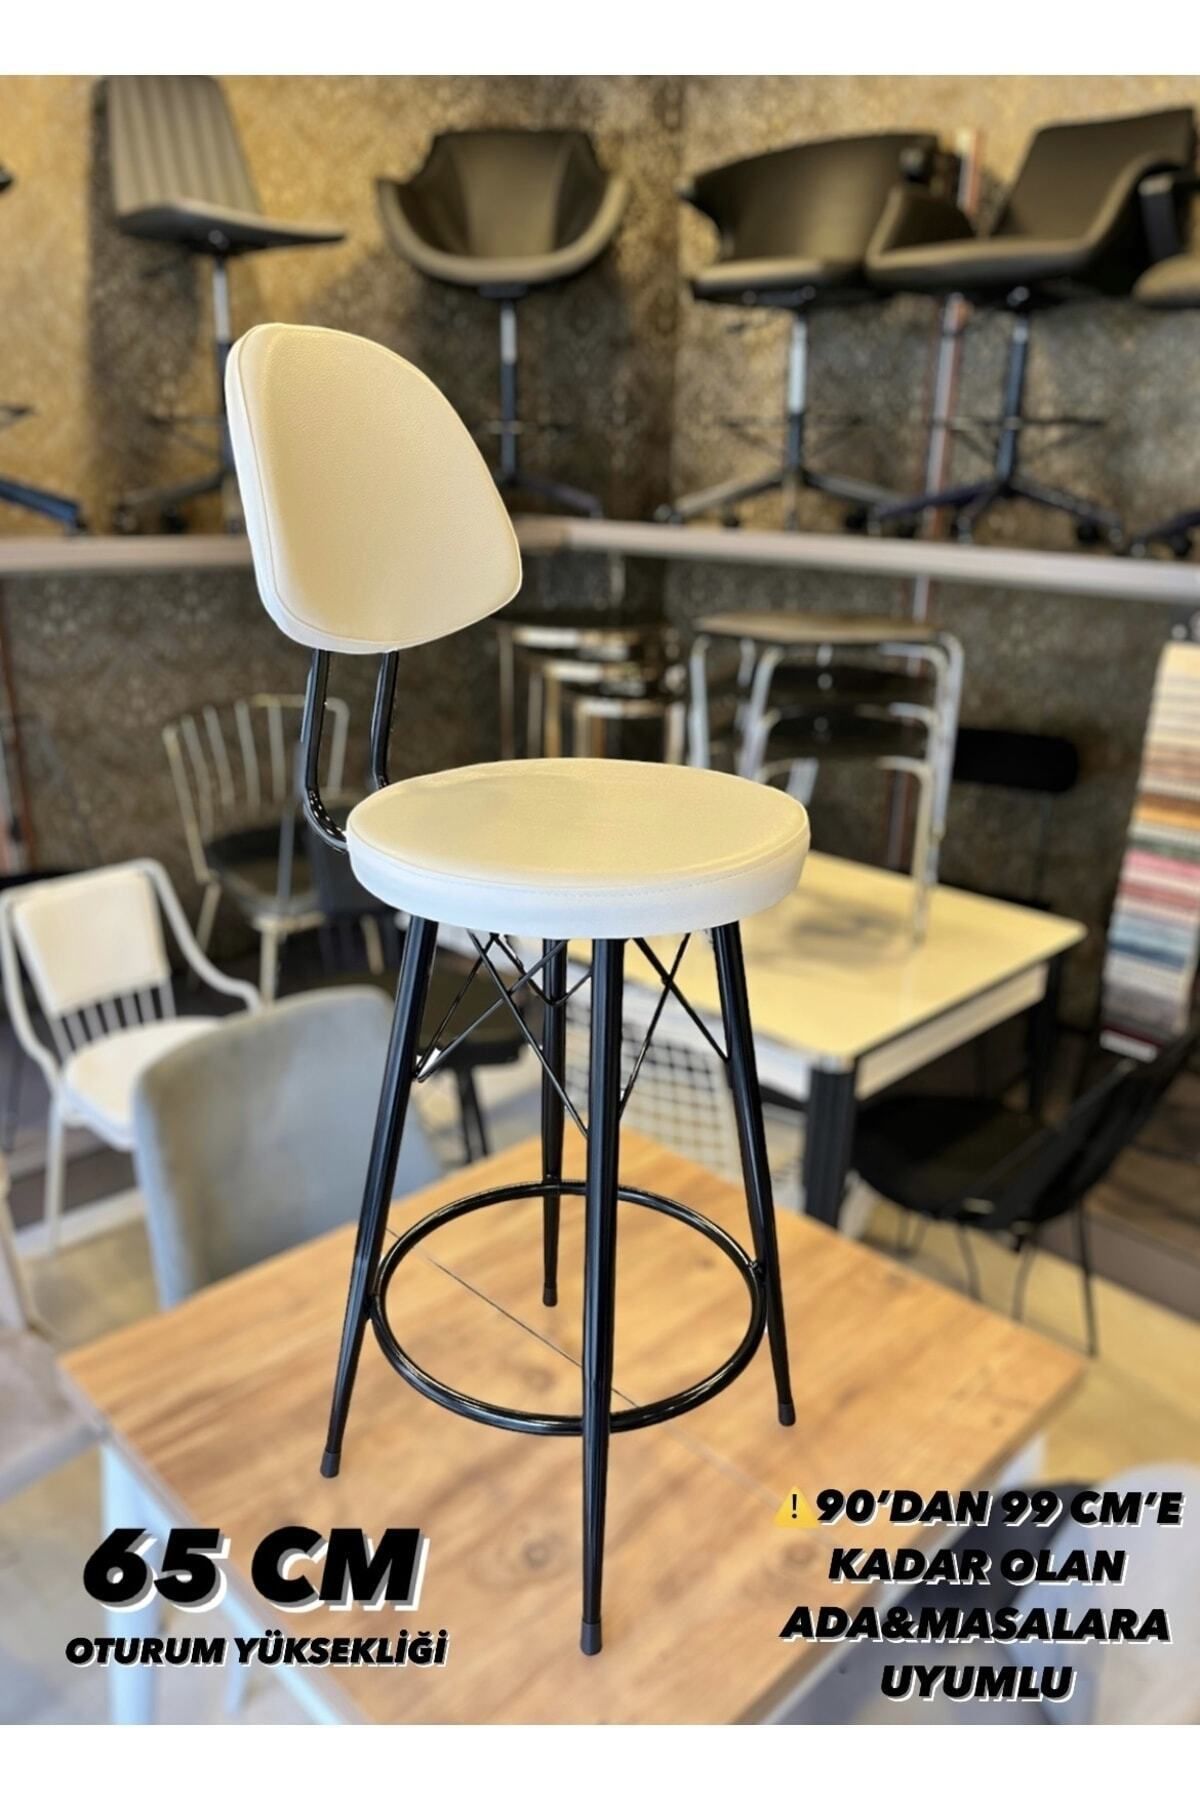 Sandalye Shop Yeni,Dolce Tasarım Bar Sandalyesi 65 Cm Beyaz.90 ile 99 Cm Arası Ada&Masalara Uyumlu